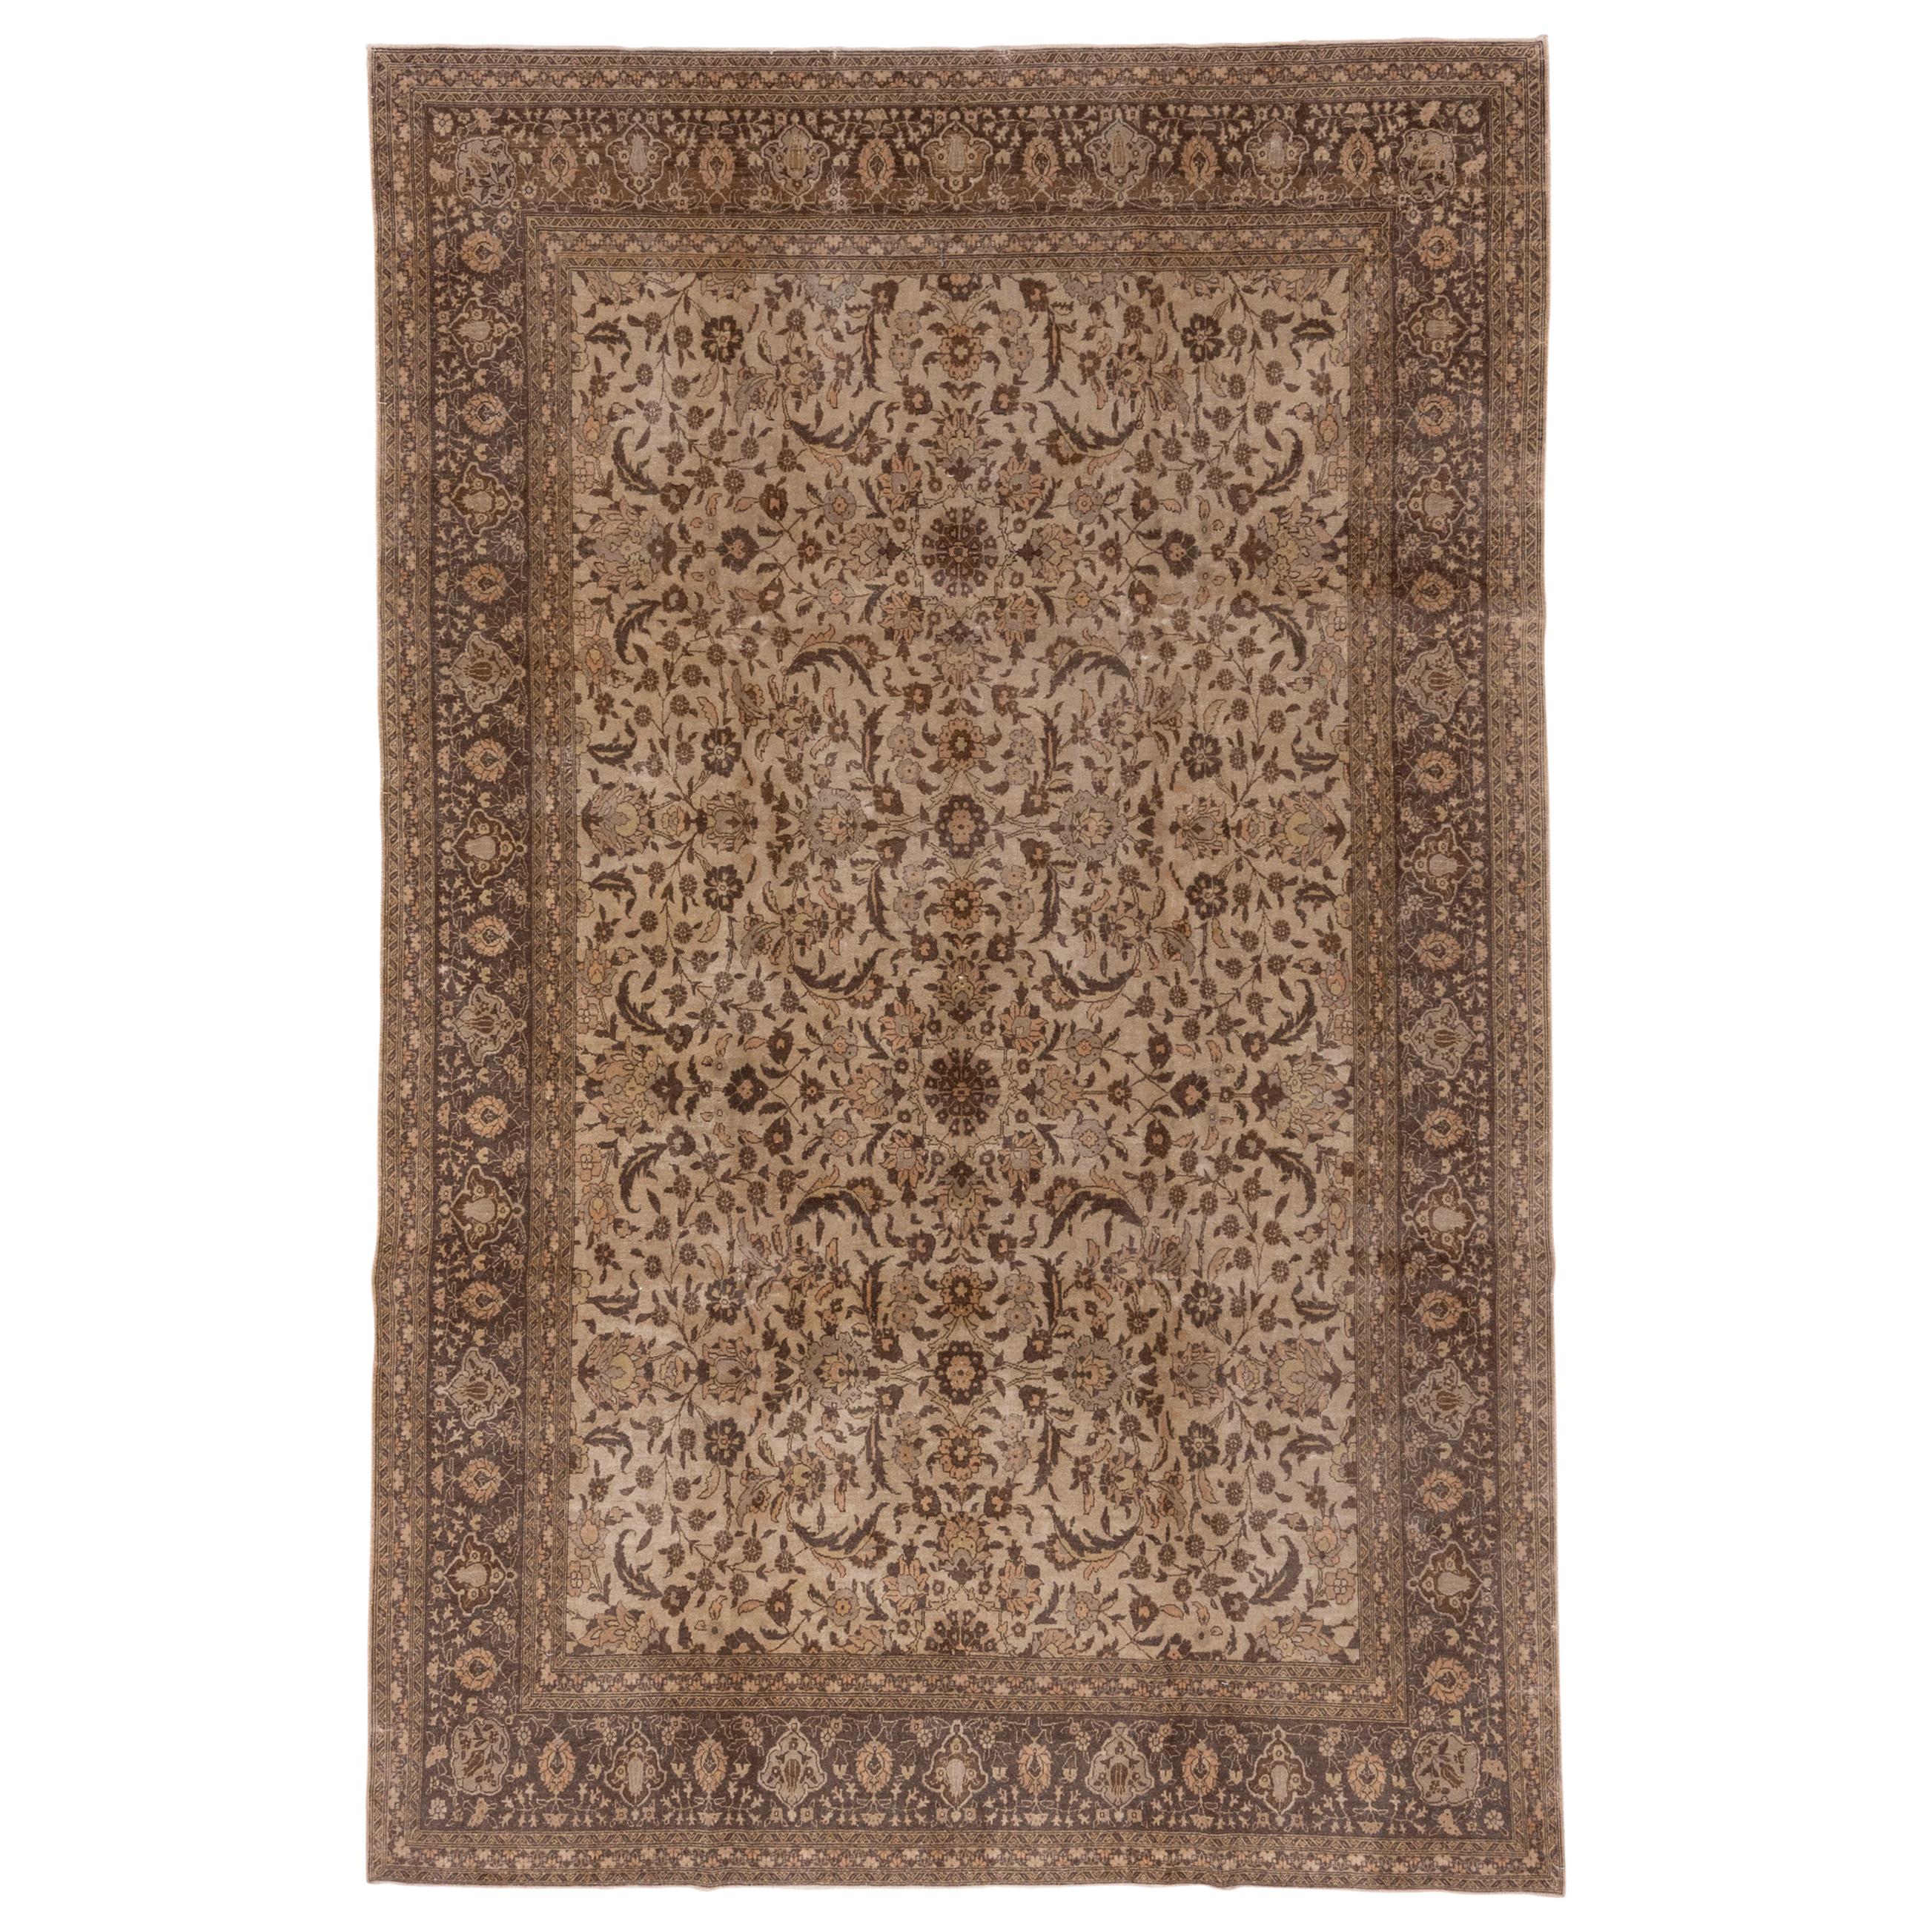 Fine tapis turc ancien Sivas, palette marron, terrain entièrement recouvert